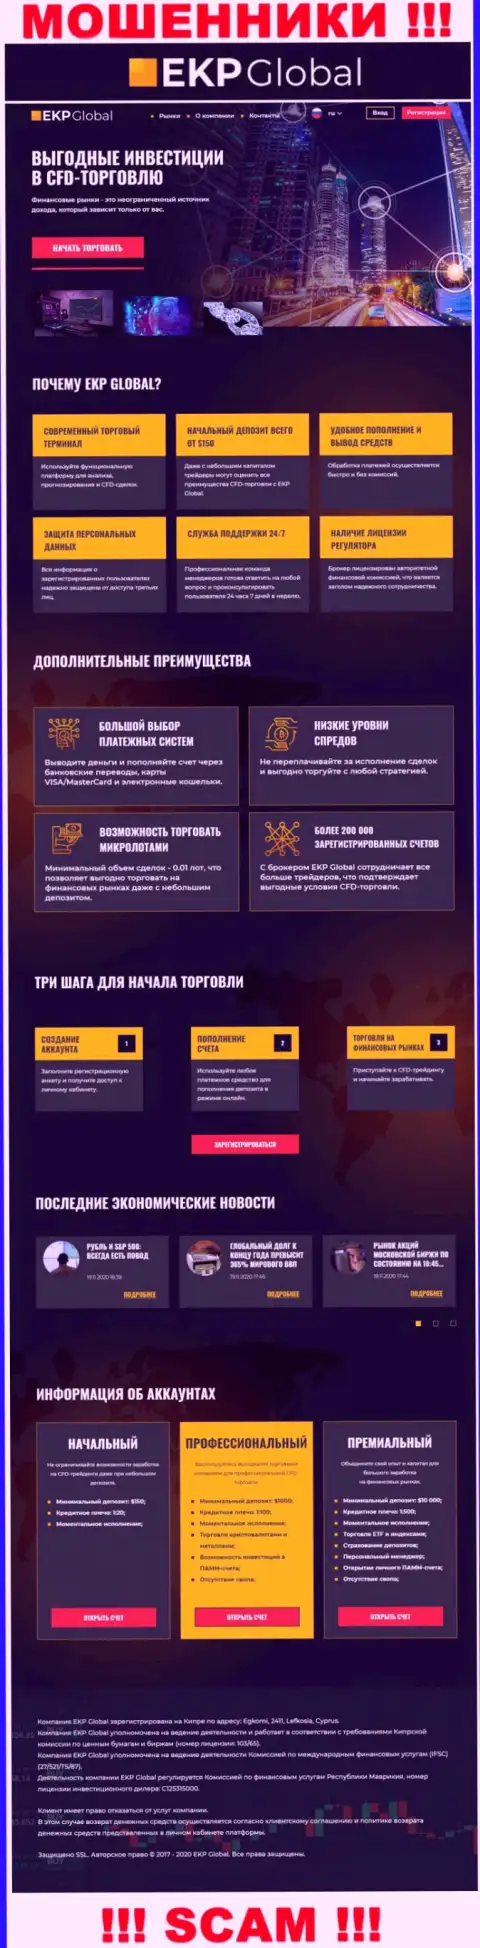 Скрин официального информационного сервиса ЕКП-Глобал - EKP-Global Com